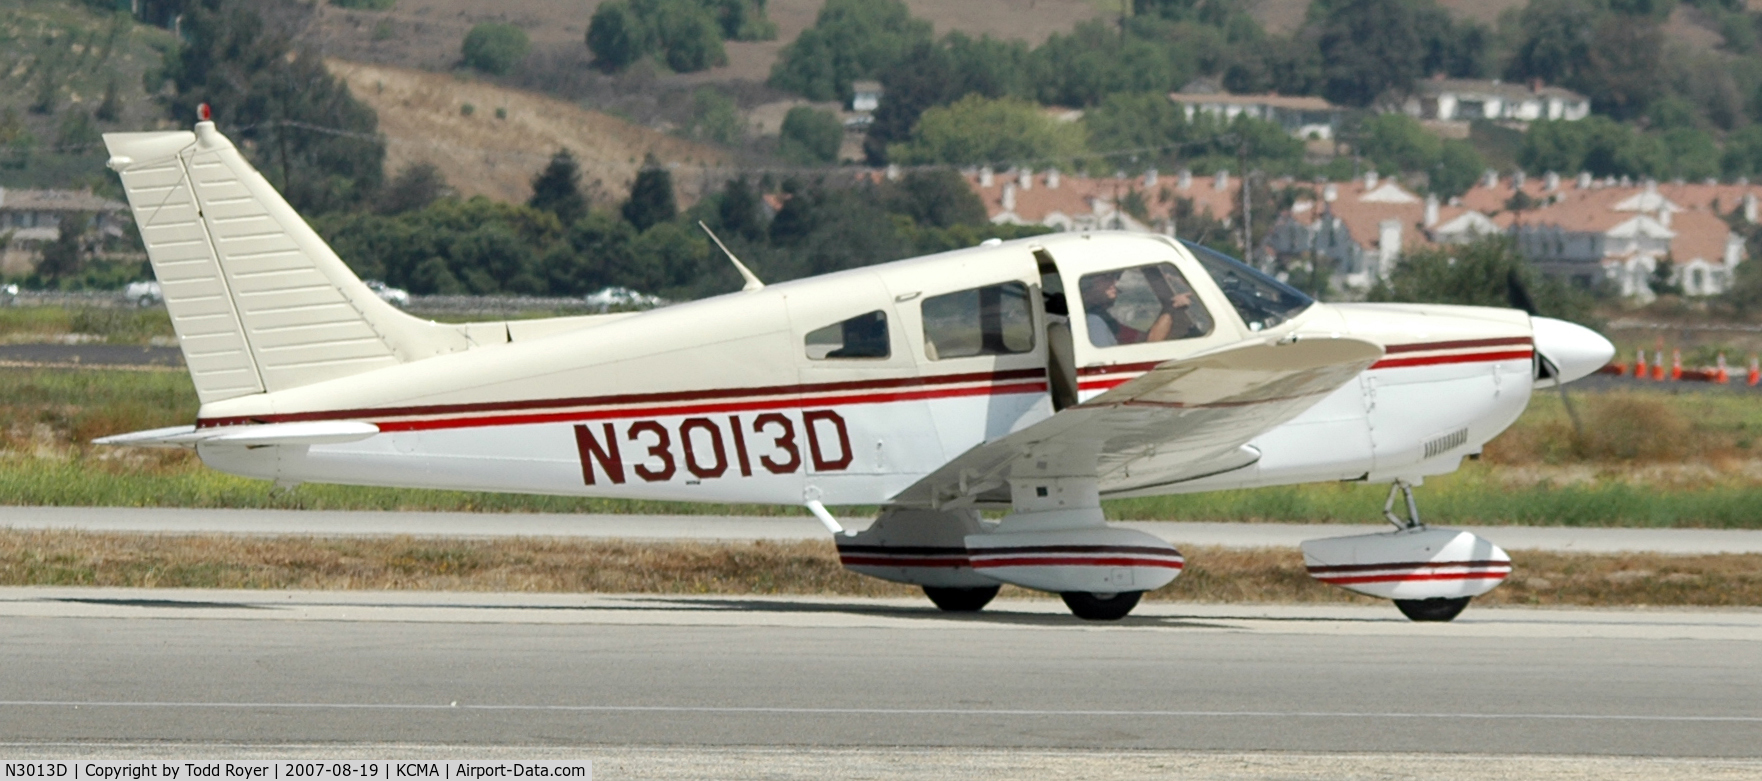 N3013D, 1978 Piper PA-28-181 Archer II C/N 28-7990170, Camarillo airshow 2007